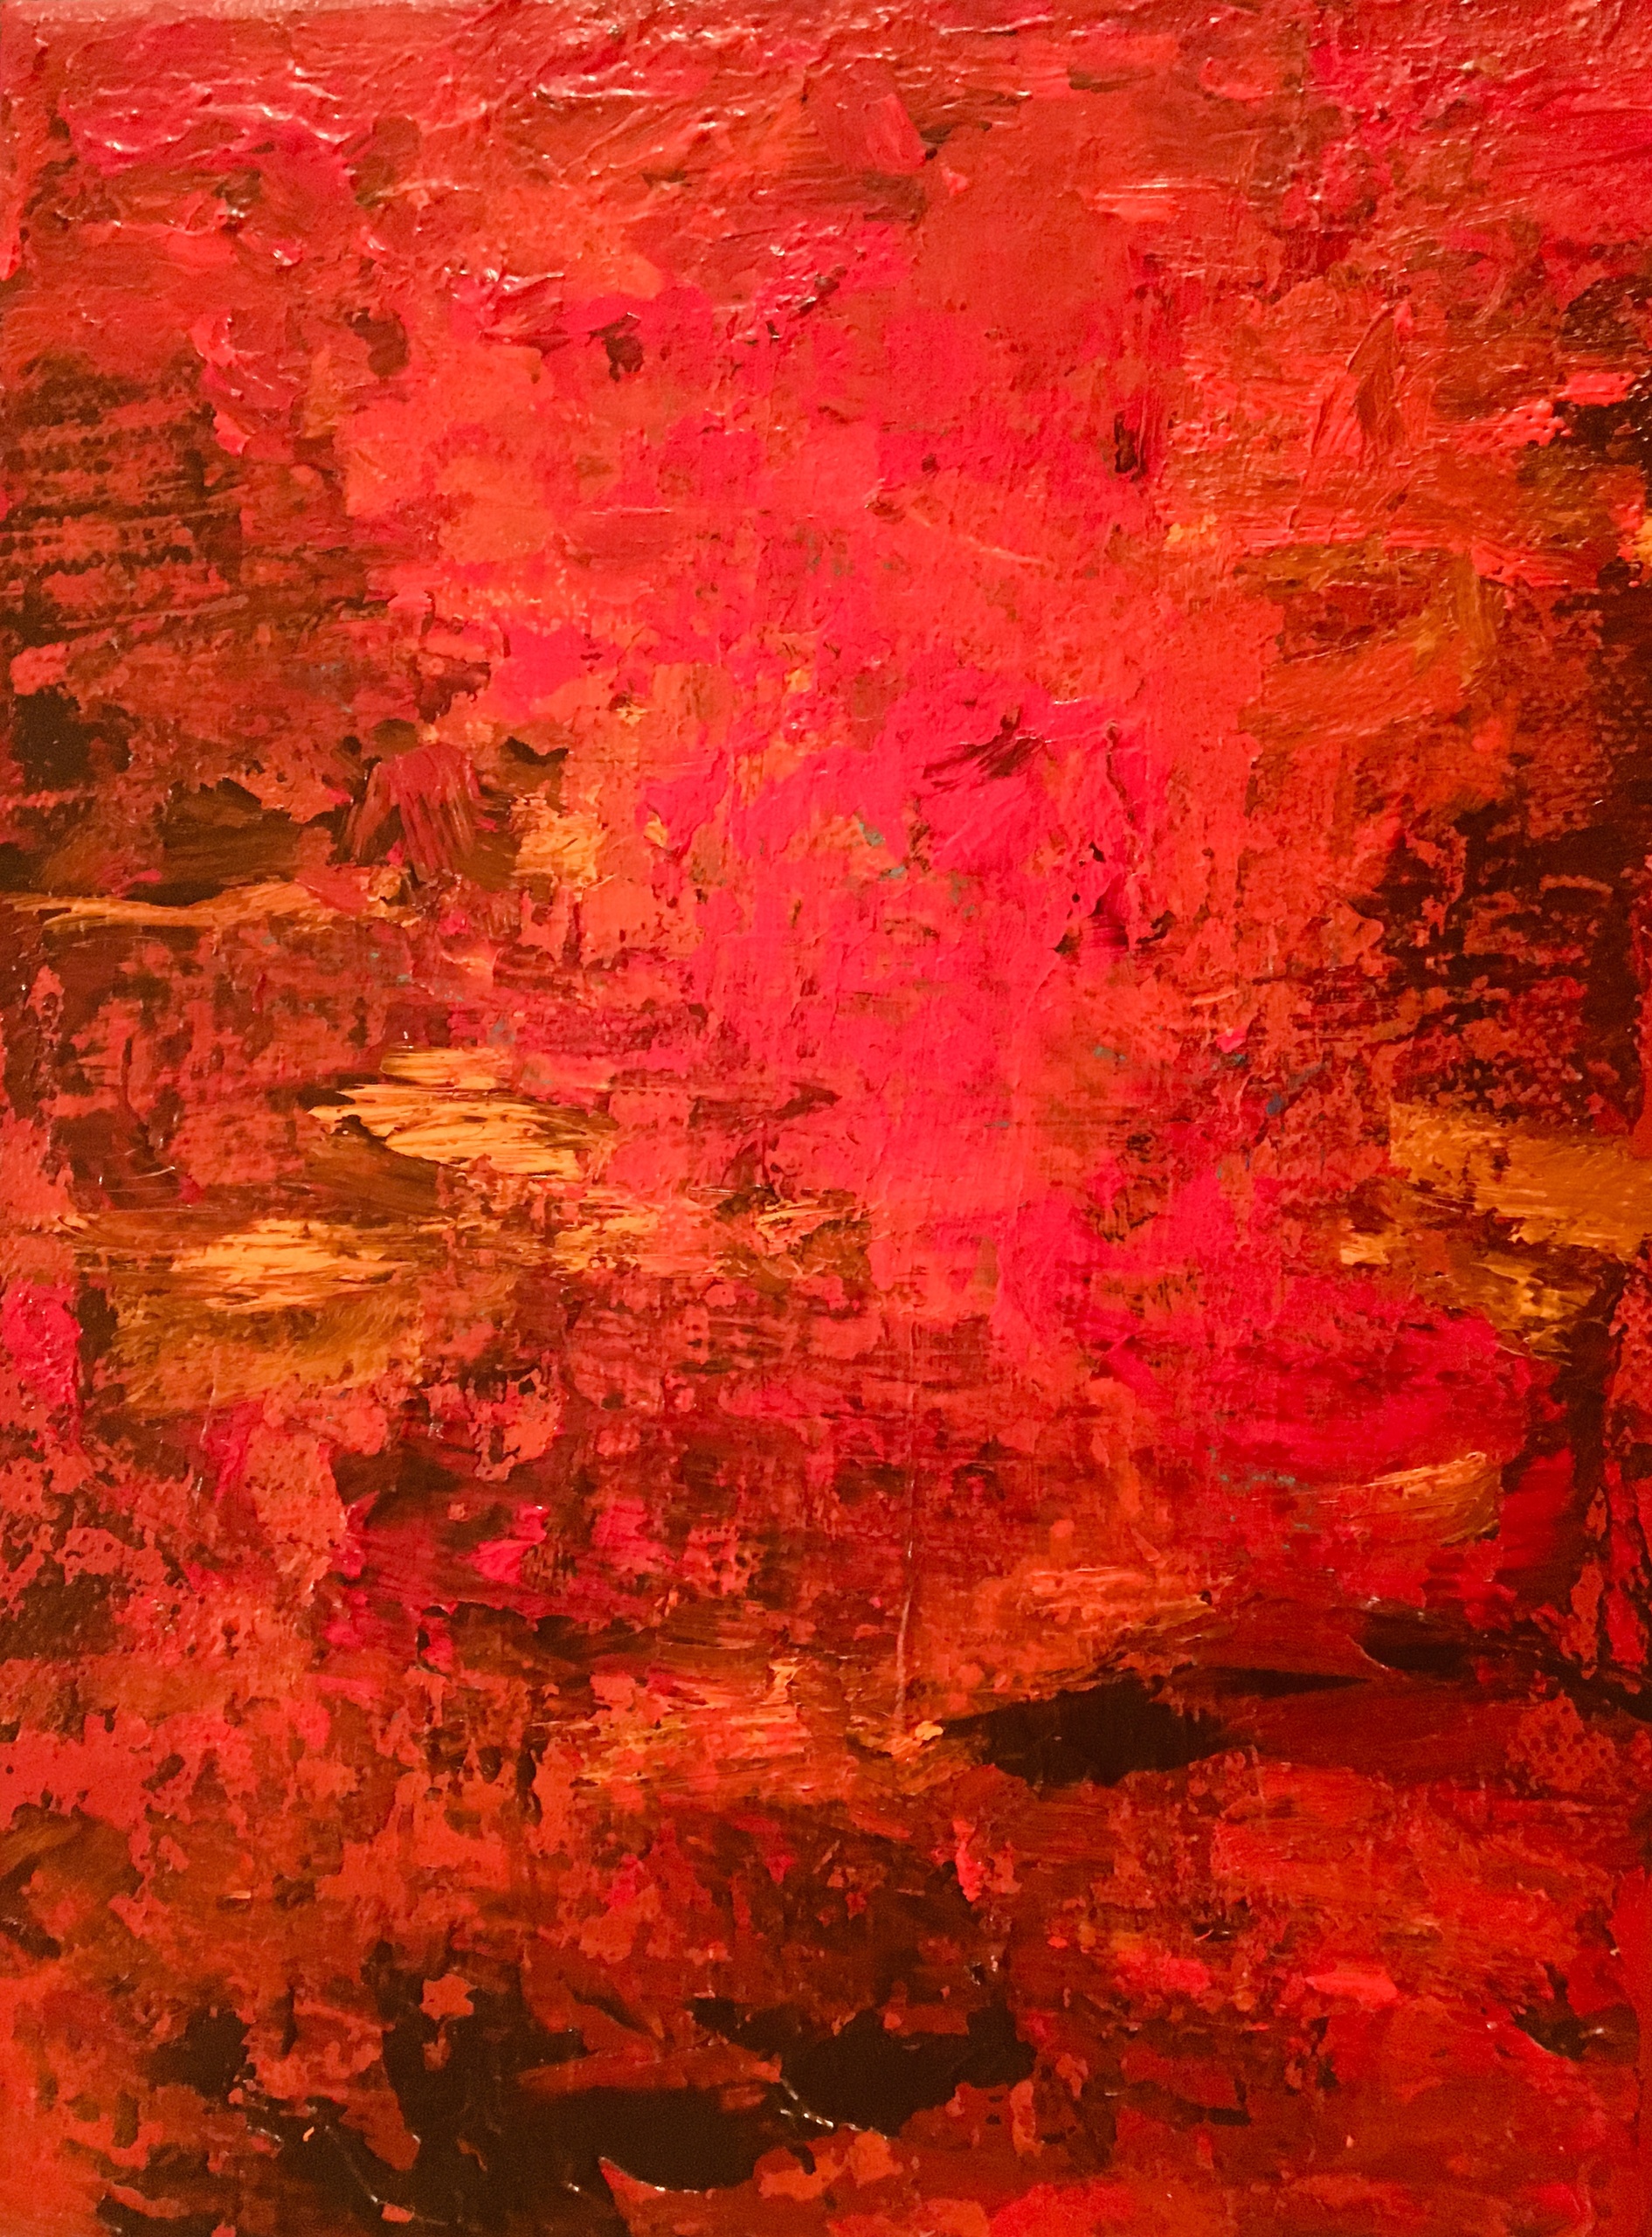 Abstraktion med rødt i rødt, hvor blanding med de gyldne farver giver det lille maleri en fornemmelse af lys og skygge.